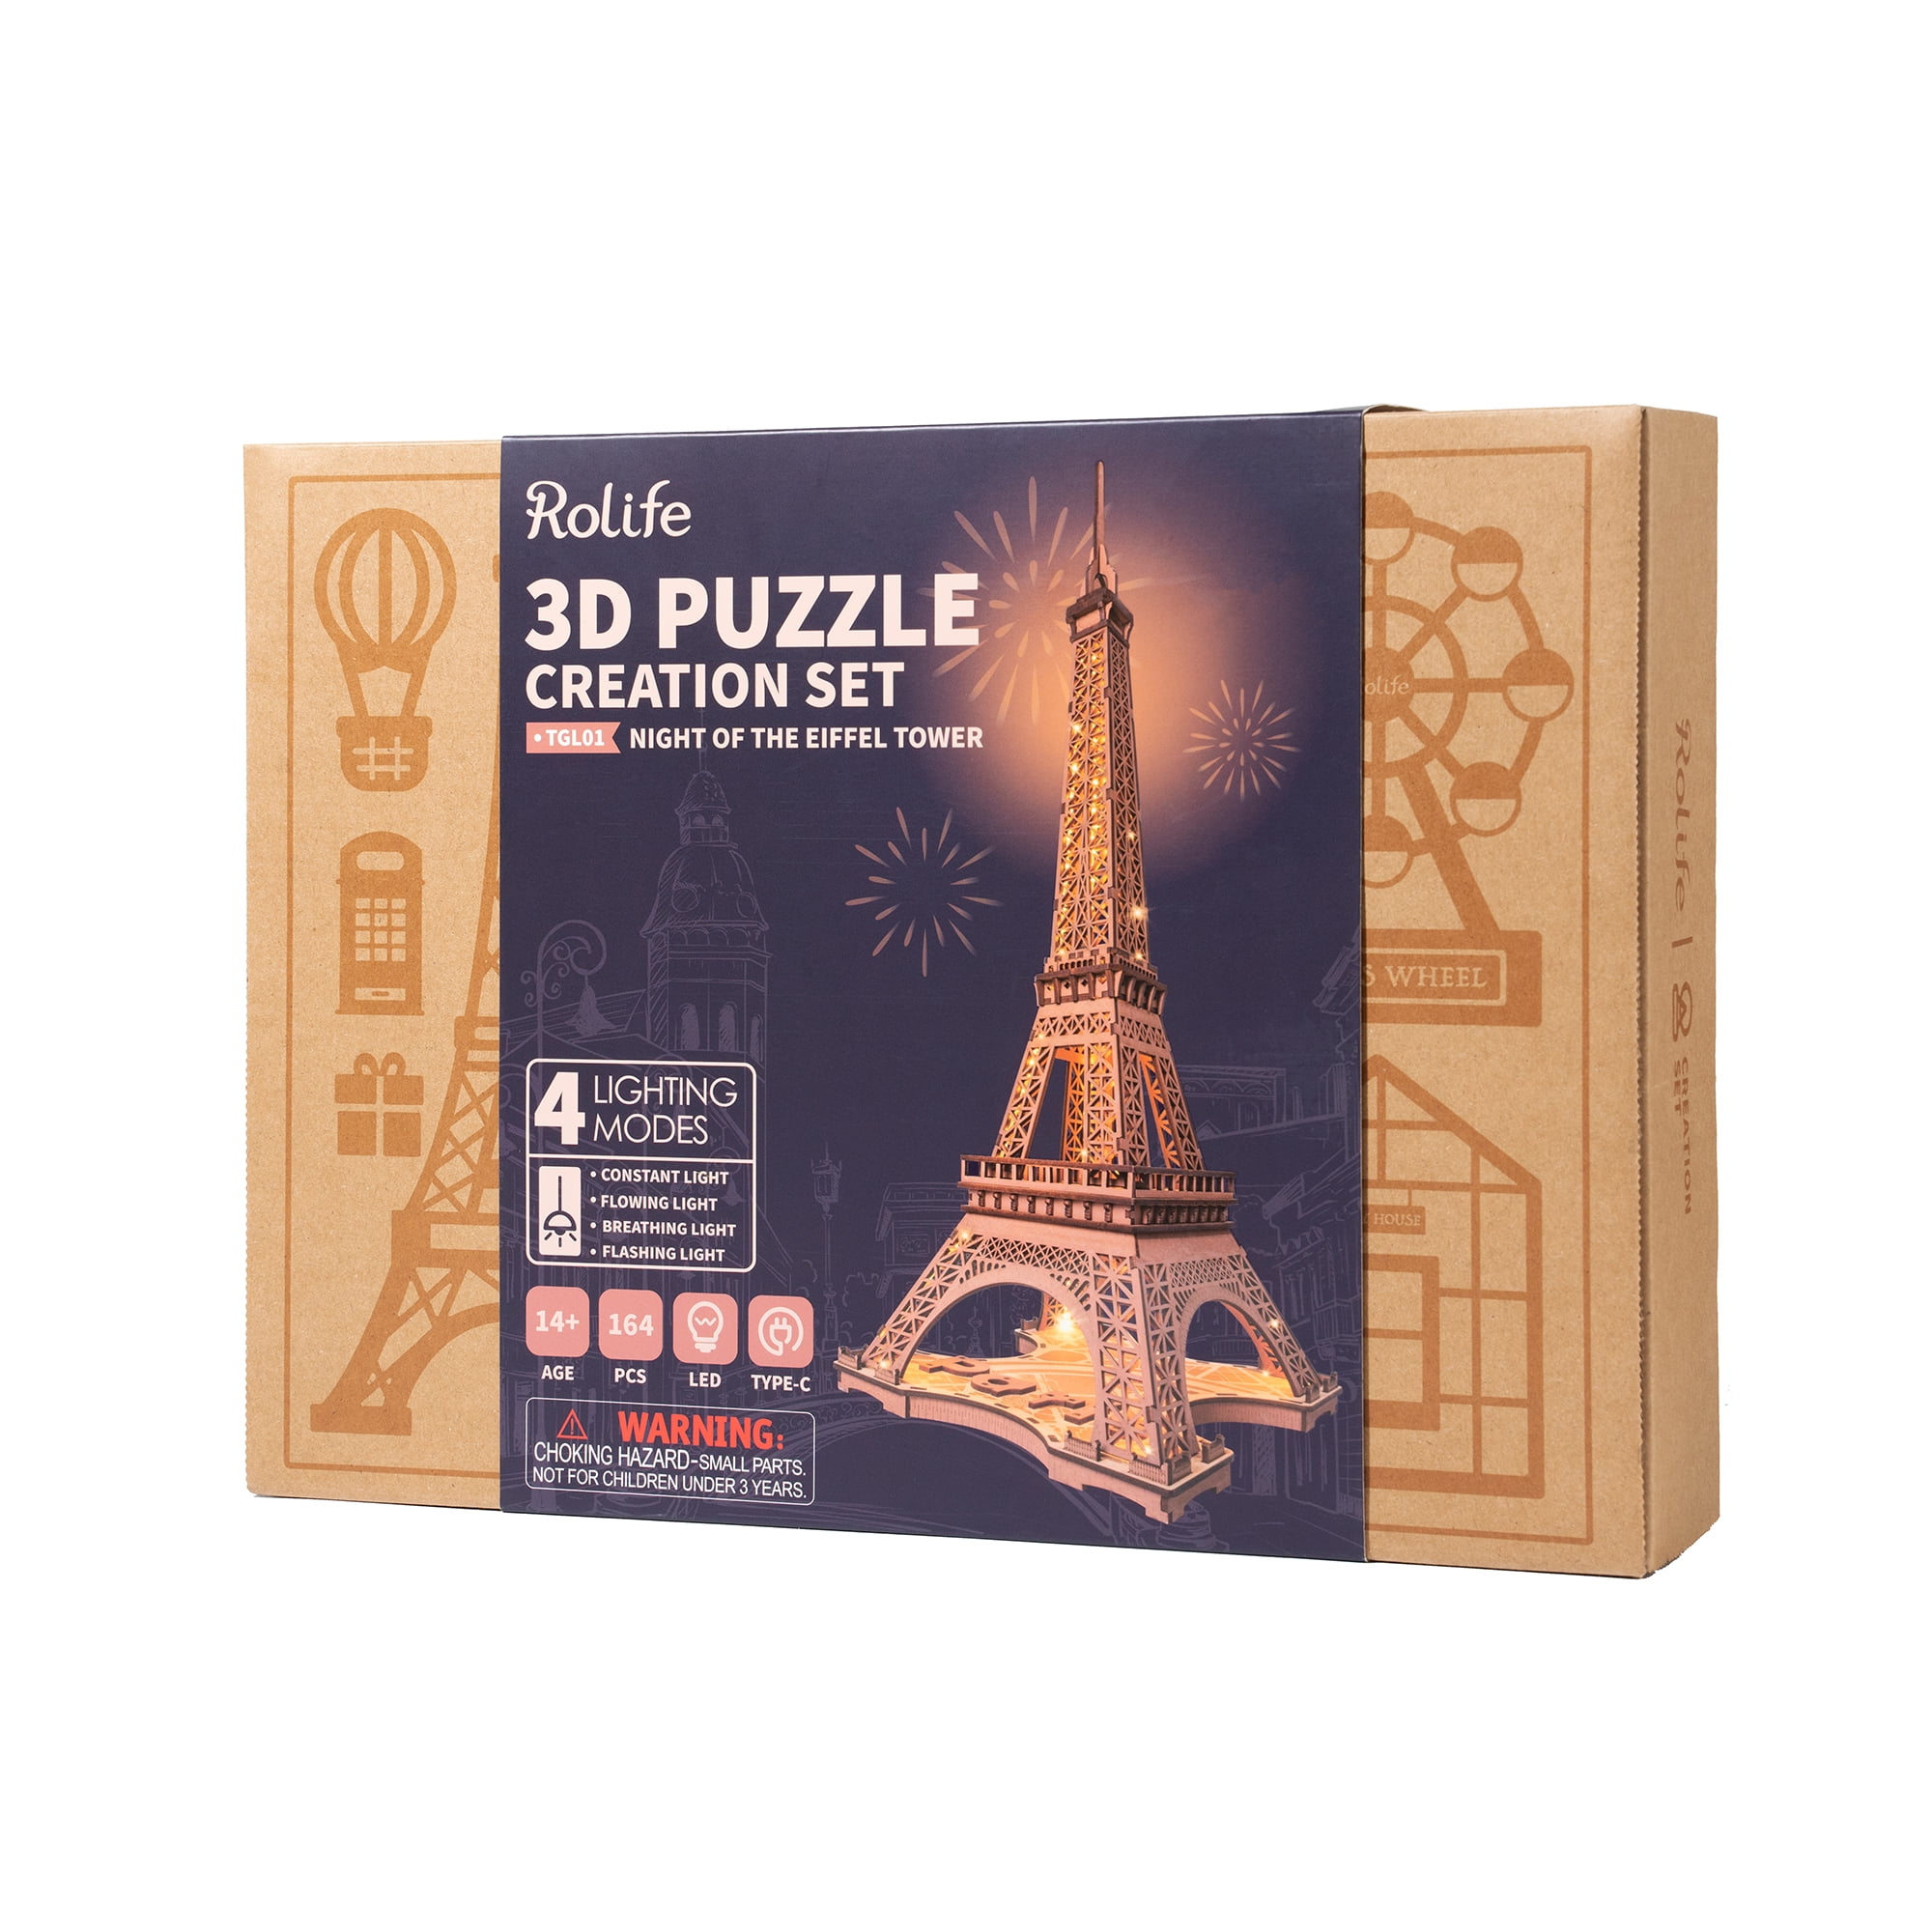 Tour Eiffel de nuit - Puzzle 3D - 226 pieces - Puzzle 3D